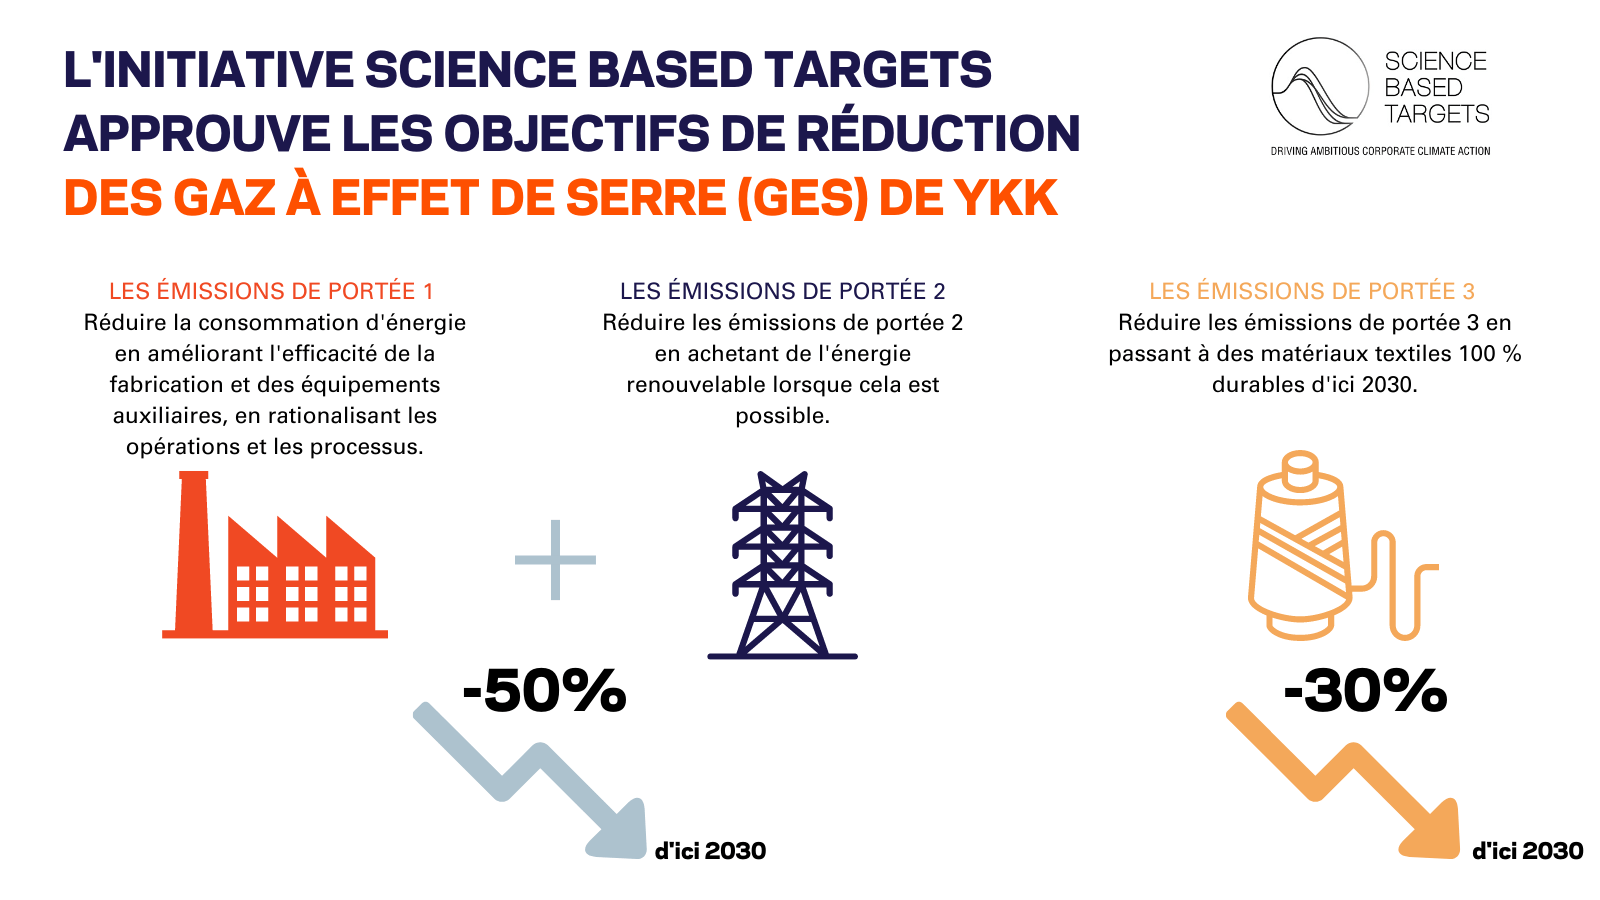 L’initiative Science Based Targets approuve les objectifs de réduction des gaz à effet de serre (GES) de YKK